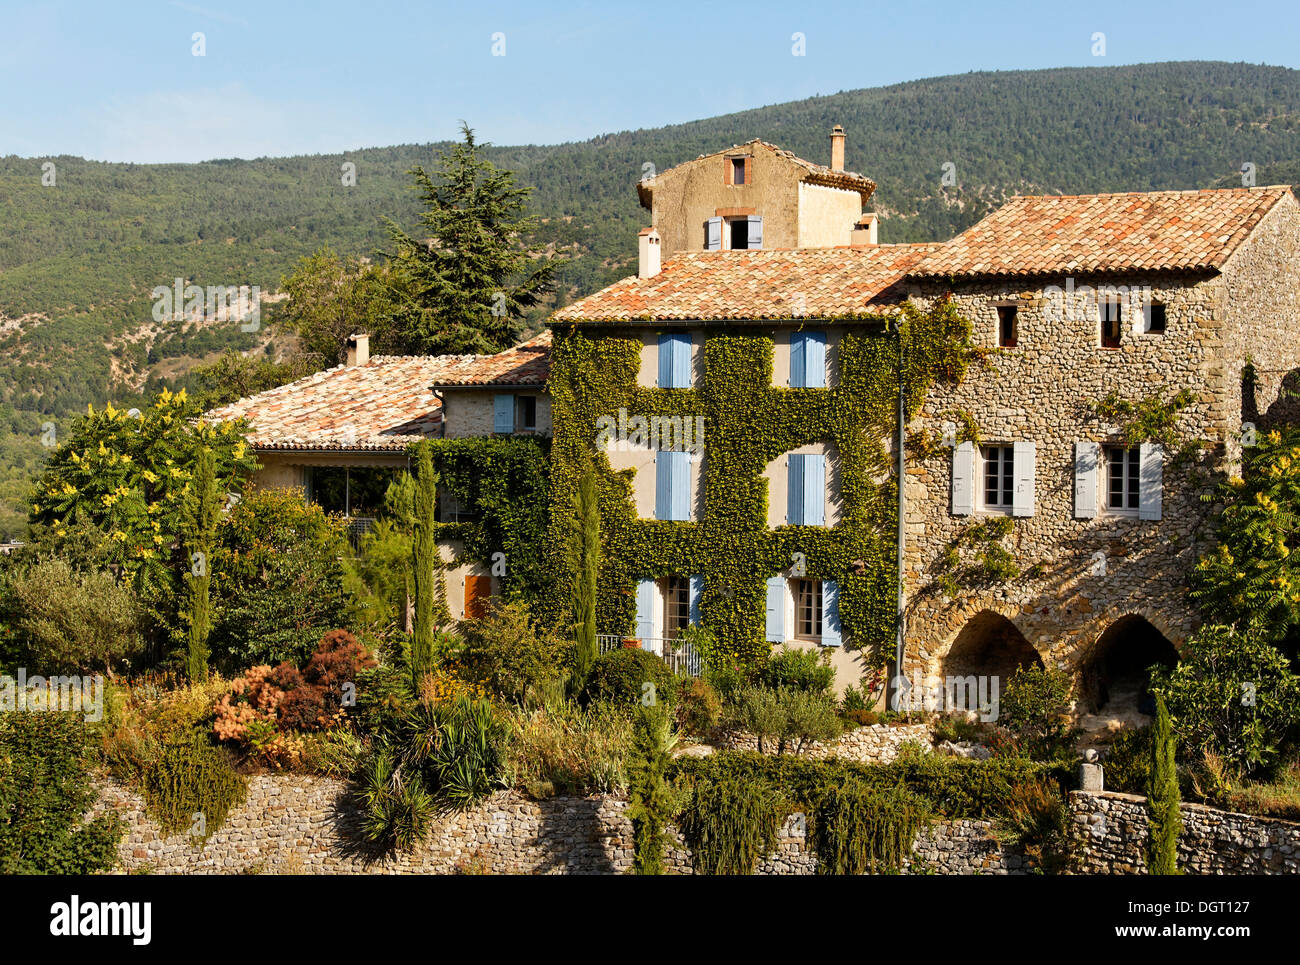 Mountain village of Aurel near Sault, Apt, Provence region, Département Vaucluse, France, Europe Stock Photo